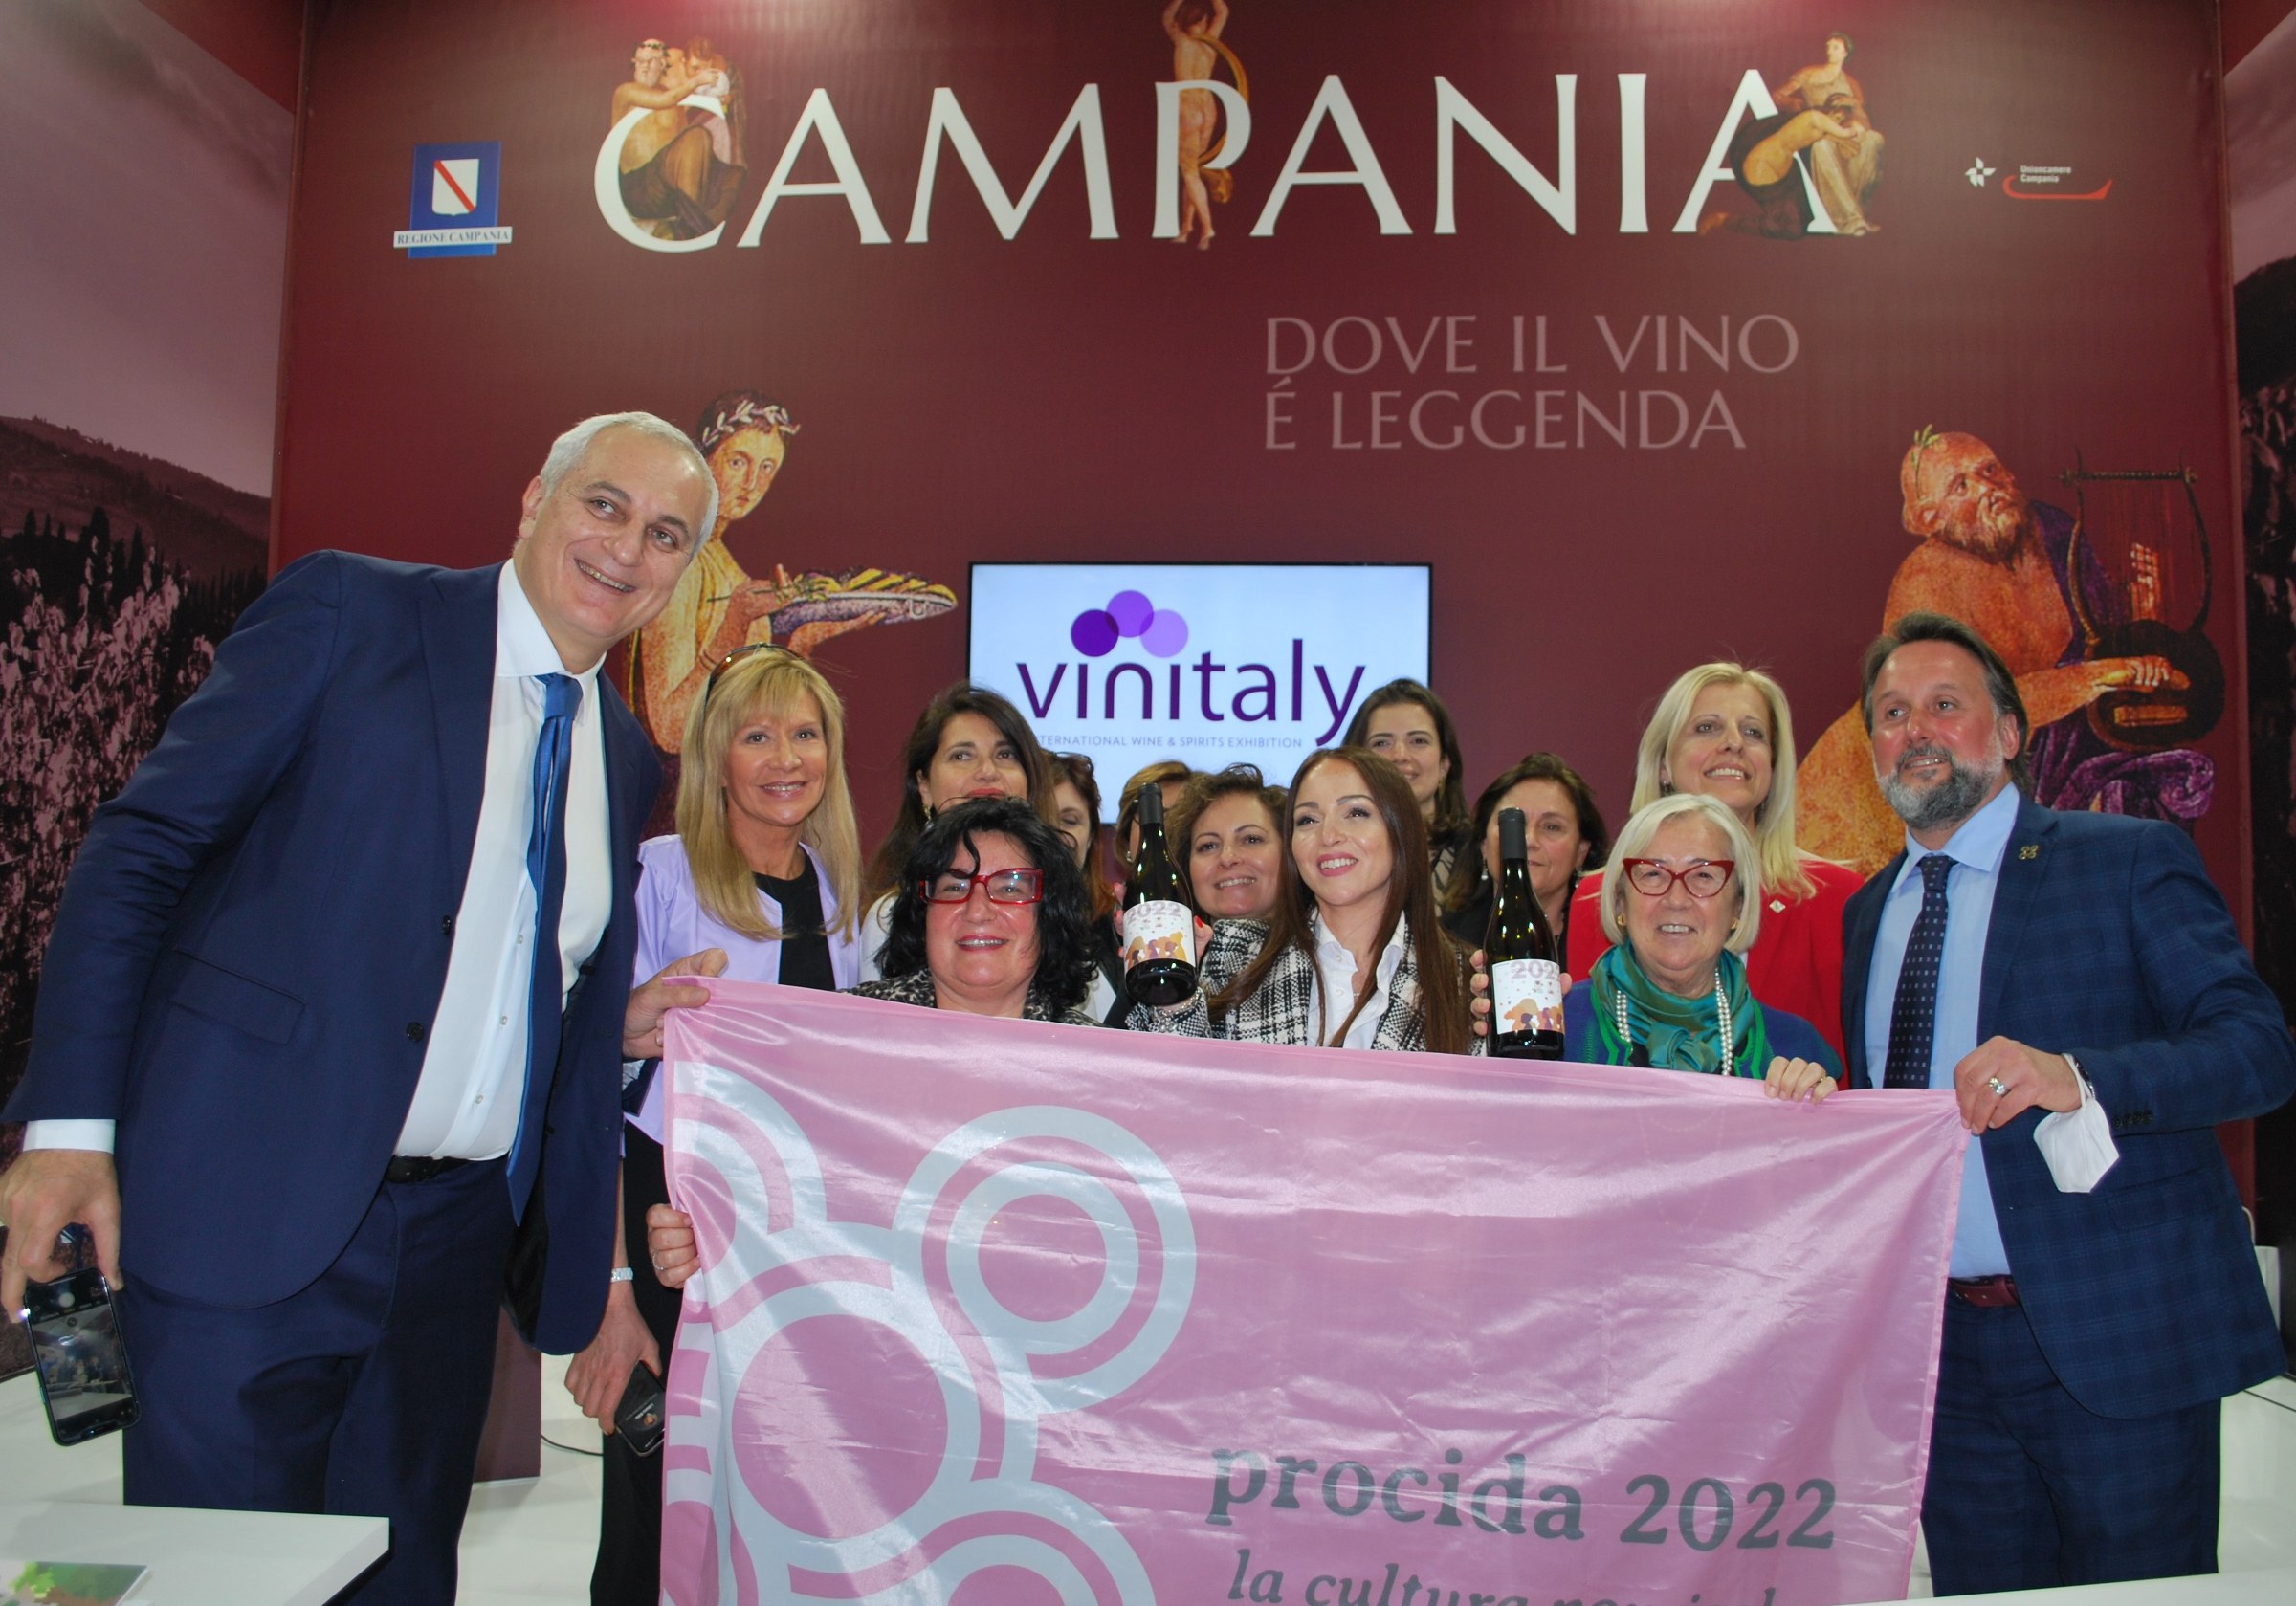 Vinitaly 2022 Presentazione Convention Nazionale in Campania 11 aprile